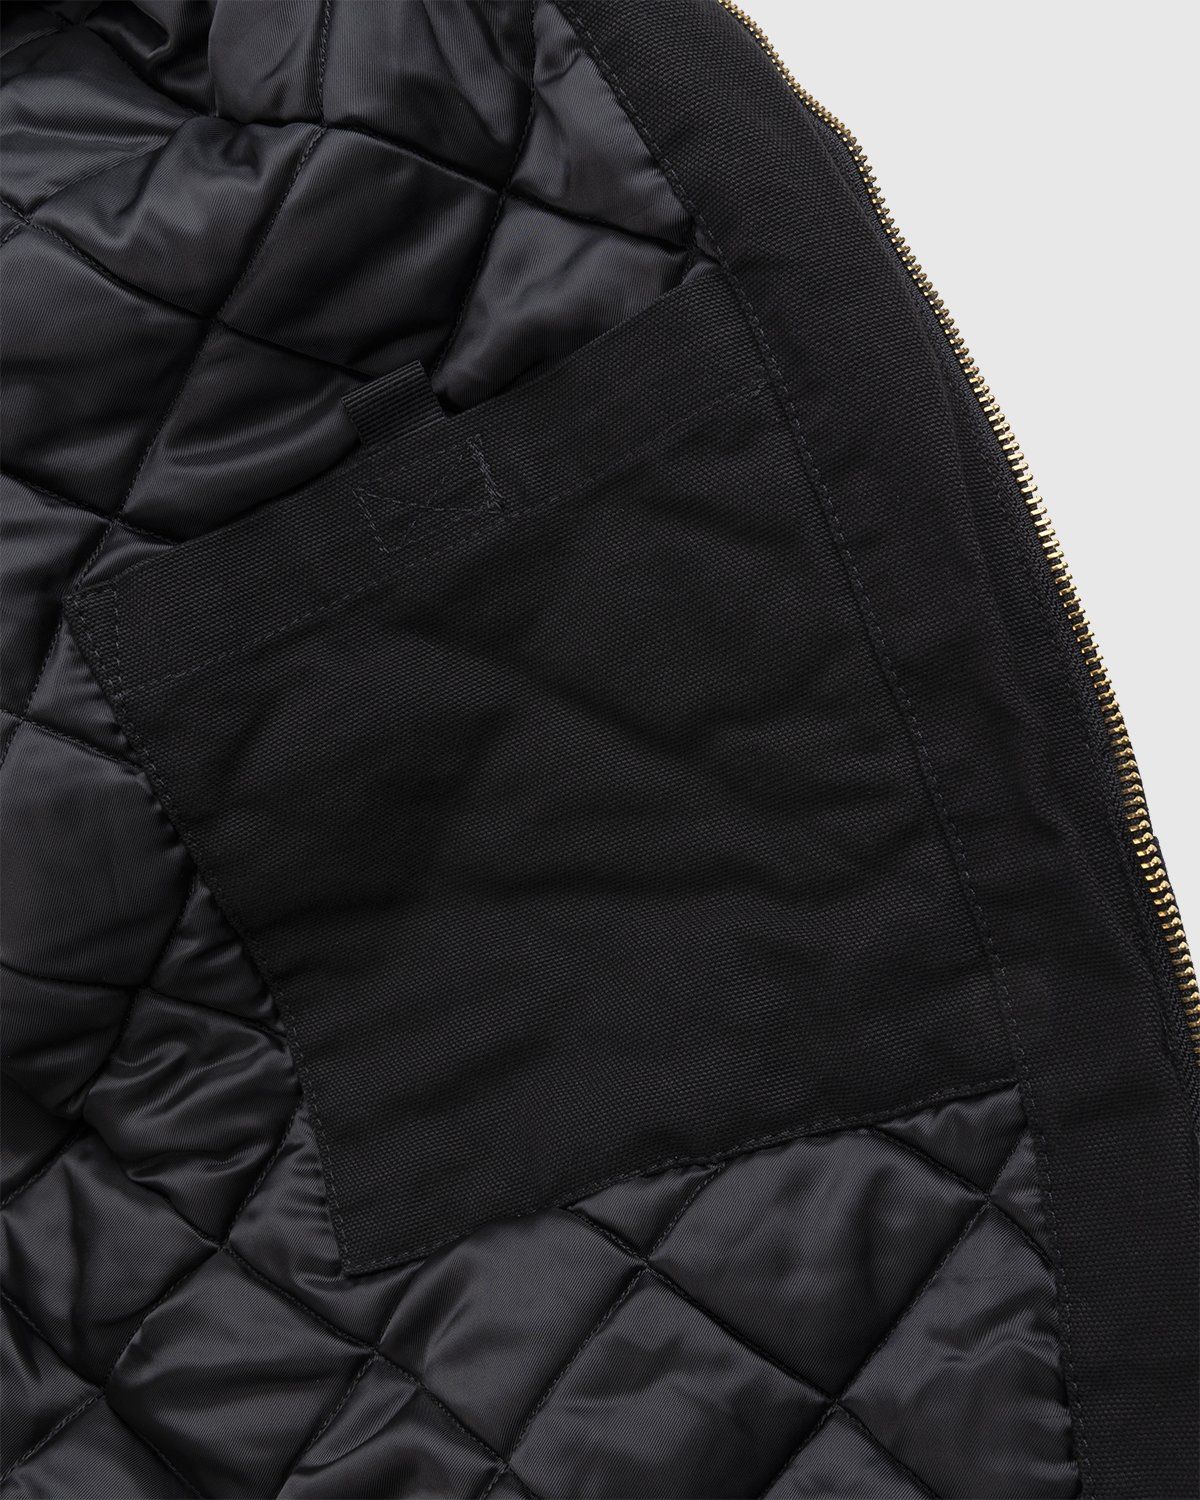 Carhartt WIP – OG Active Jacket Black - Jackets - Black - Image 6